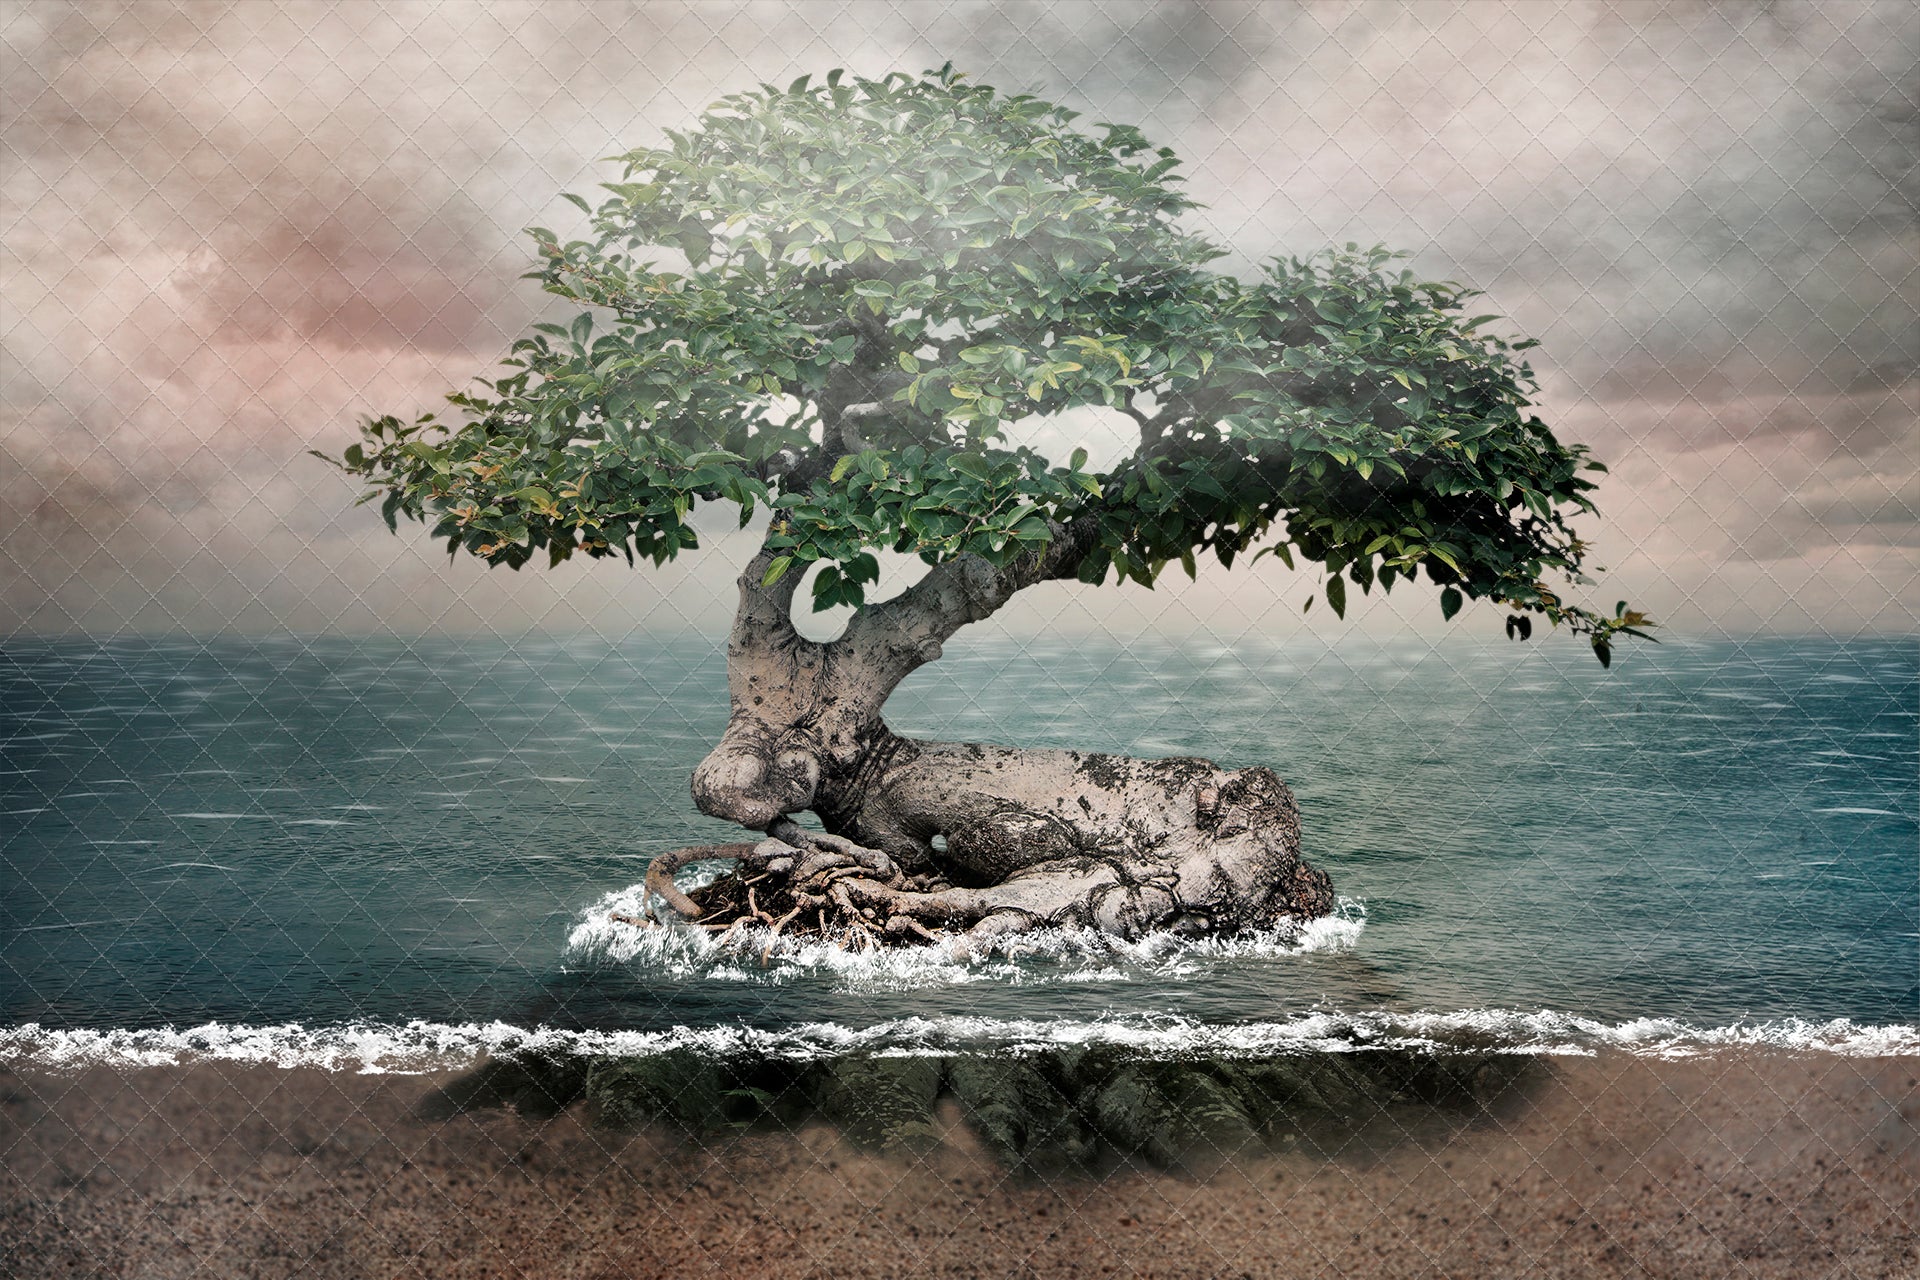 Mermaid the Tree island